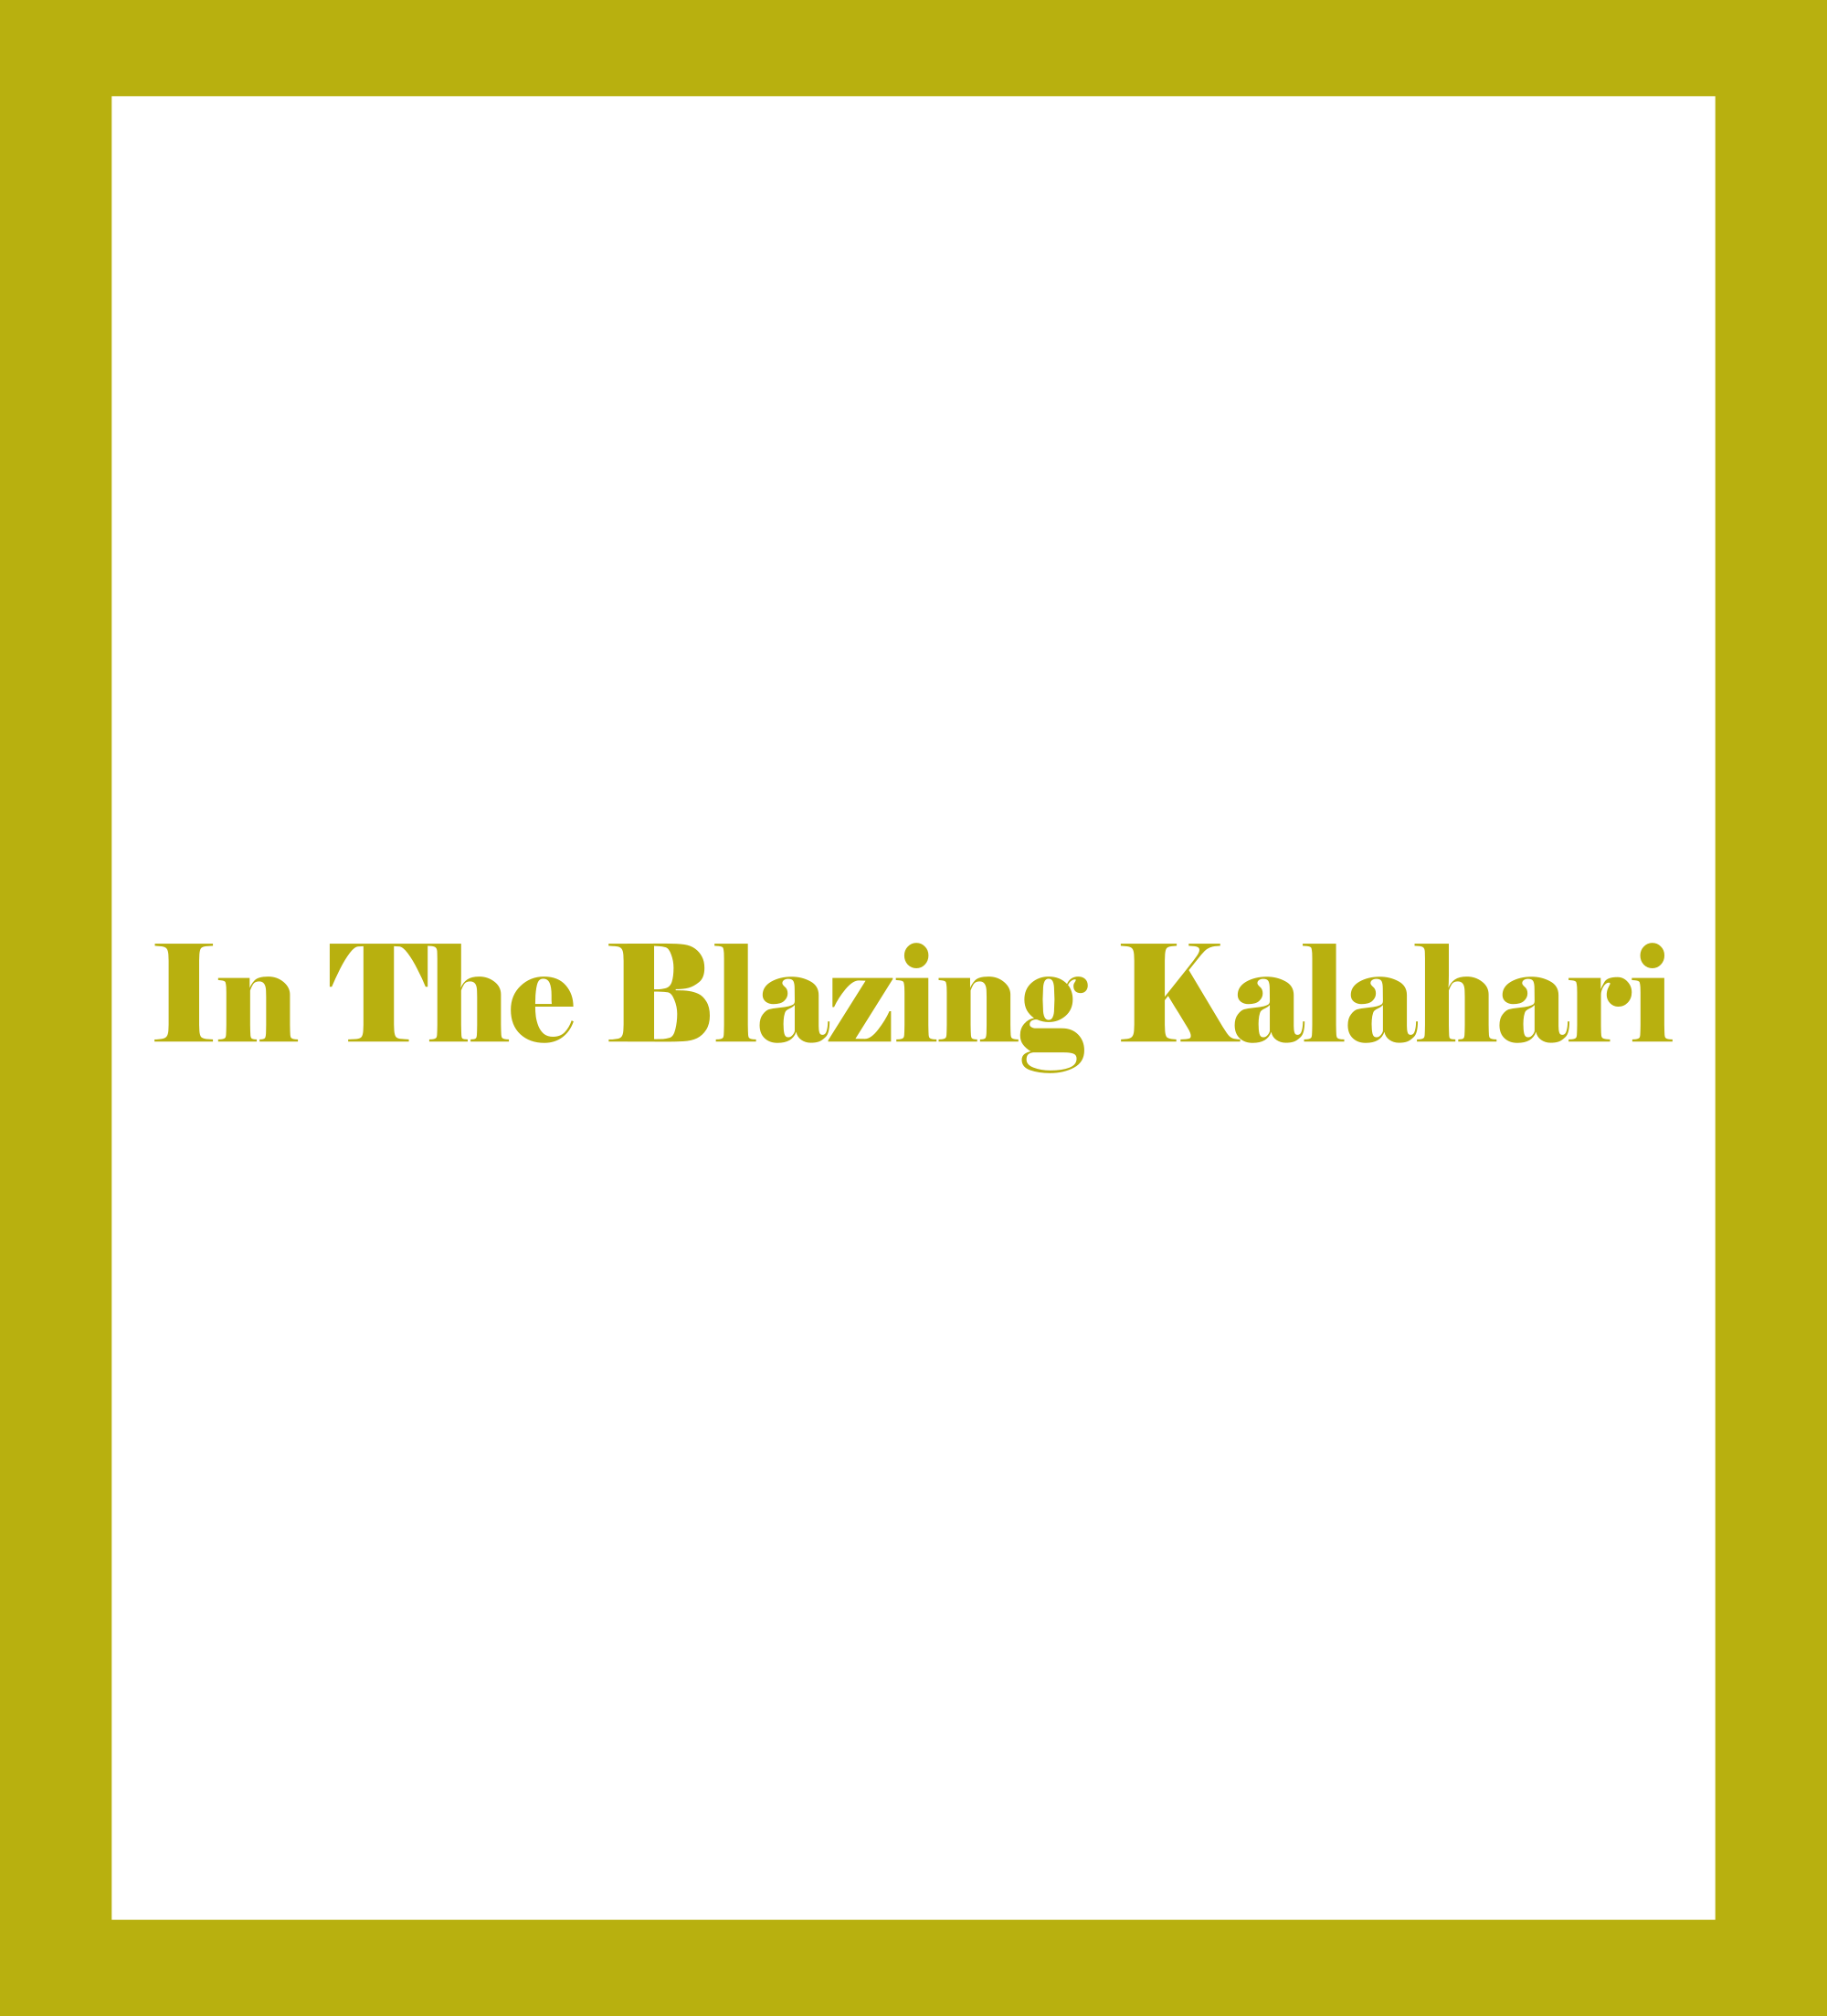 En el abrasador Kalahari